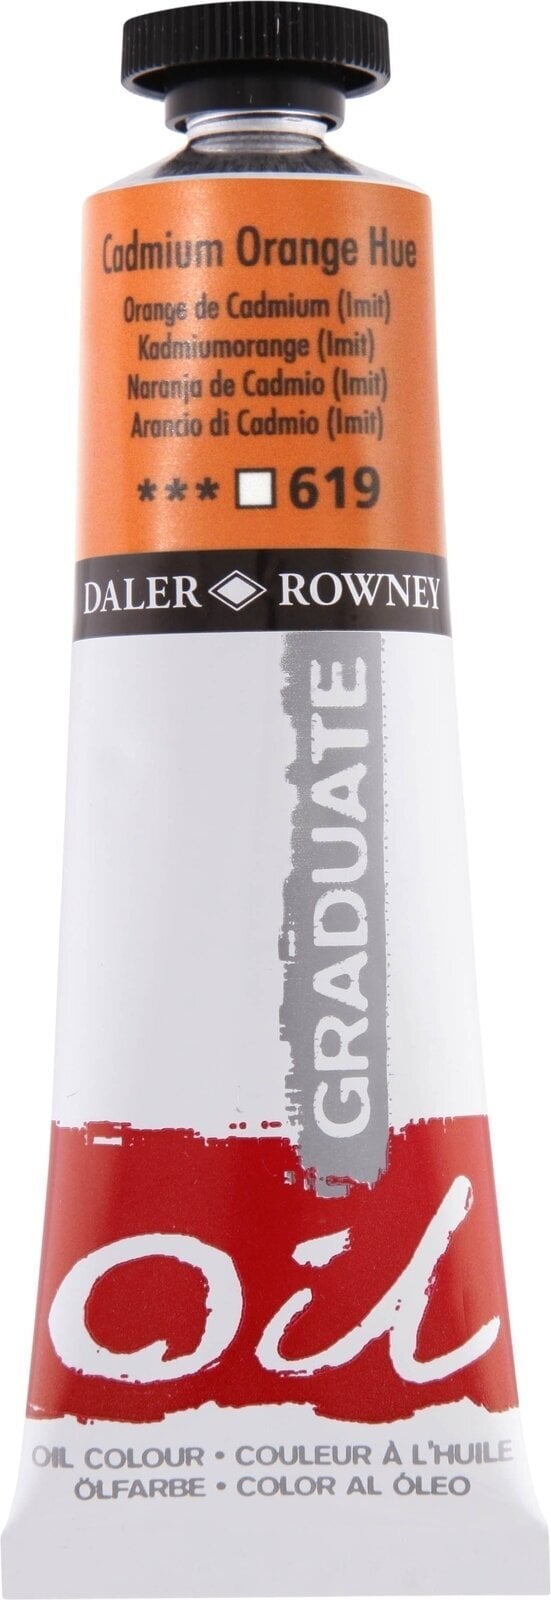 Χρώμα λαδιού Daler Rowney Graduate Λαδομπογιά Cadmium Orangee Hue 38 ml 1 τεμ.